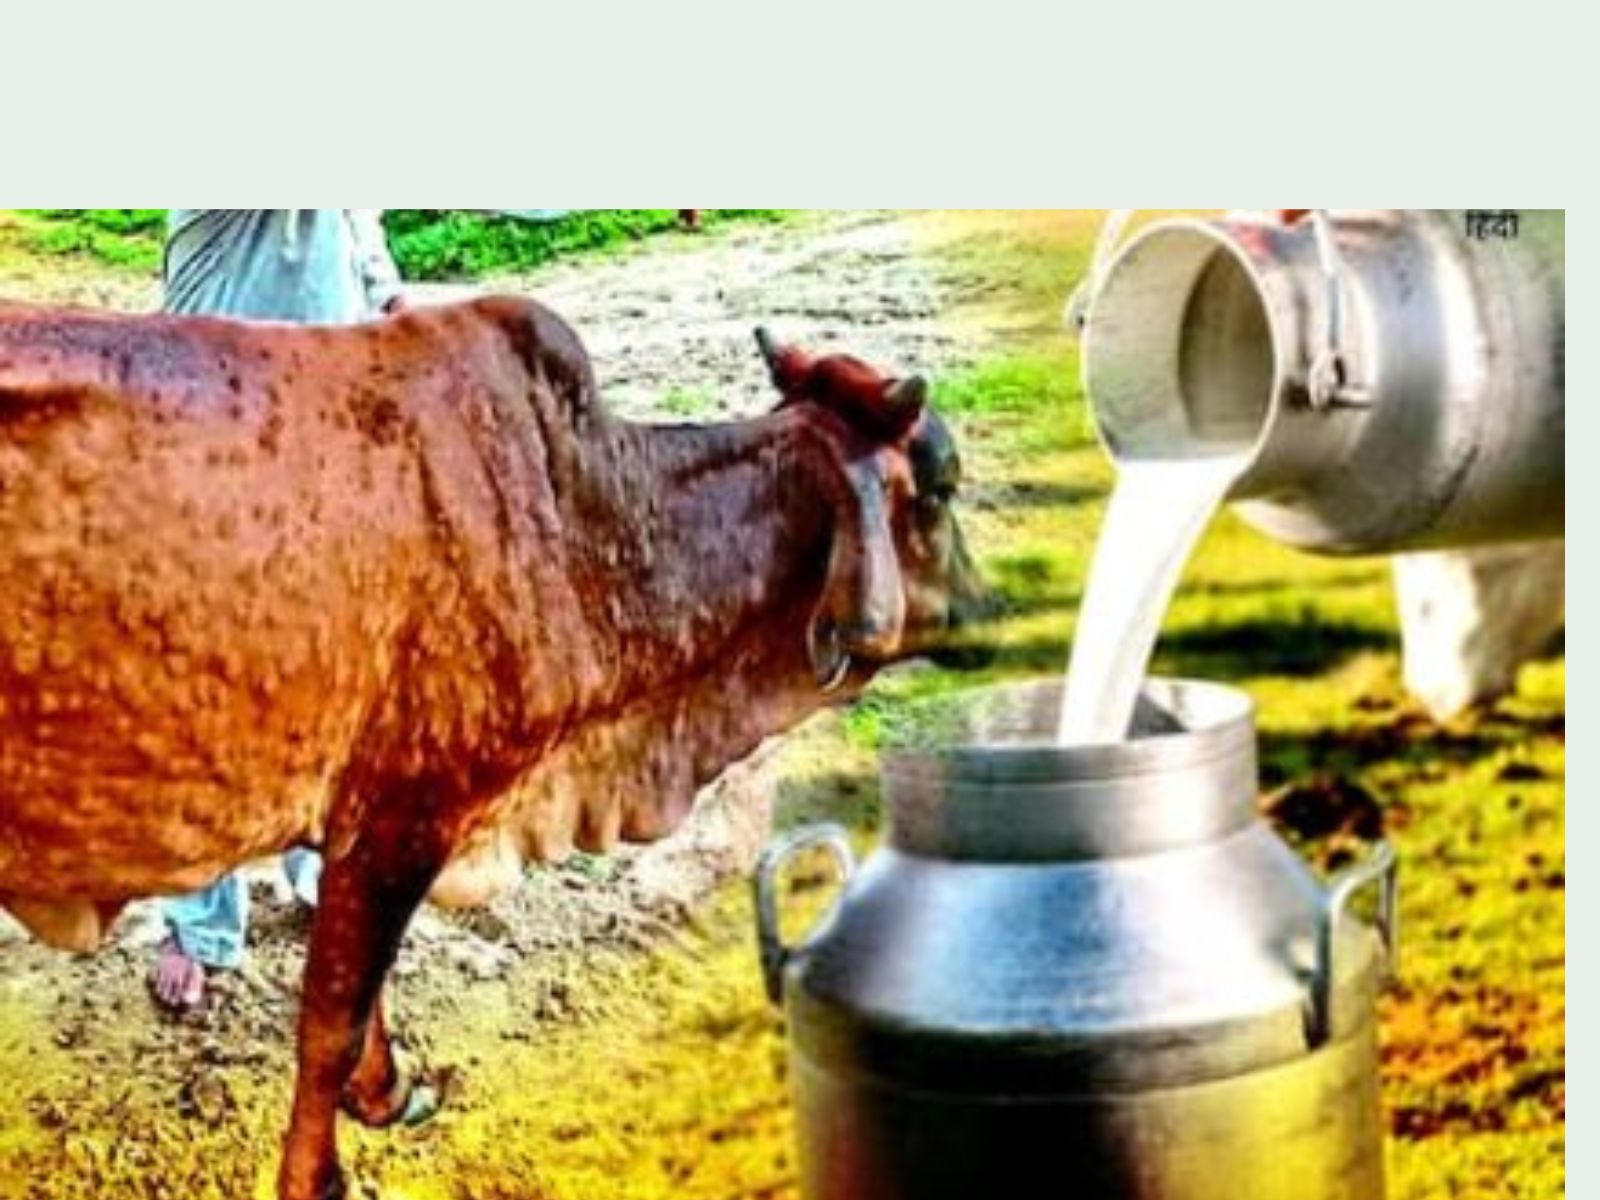 Milk crisis: ਲੰਪੀ ਨਾਲ11 ਲੱਖ ਗਾਵਾਂ ਬਿਮਾਰ, ਸੂਬੇ 'ਚ 4 ਲੱਖ ਲੀਟਰ ਦੁੱਧ ਦਾ ਉਤਪਾਦਨ ਘਟਿਆ